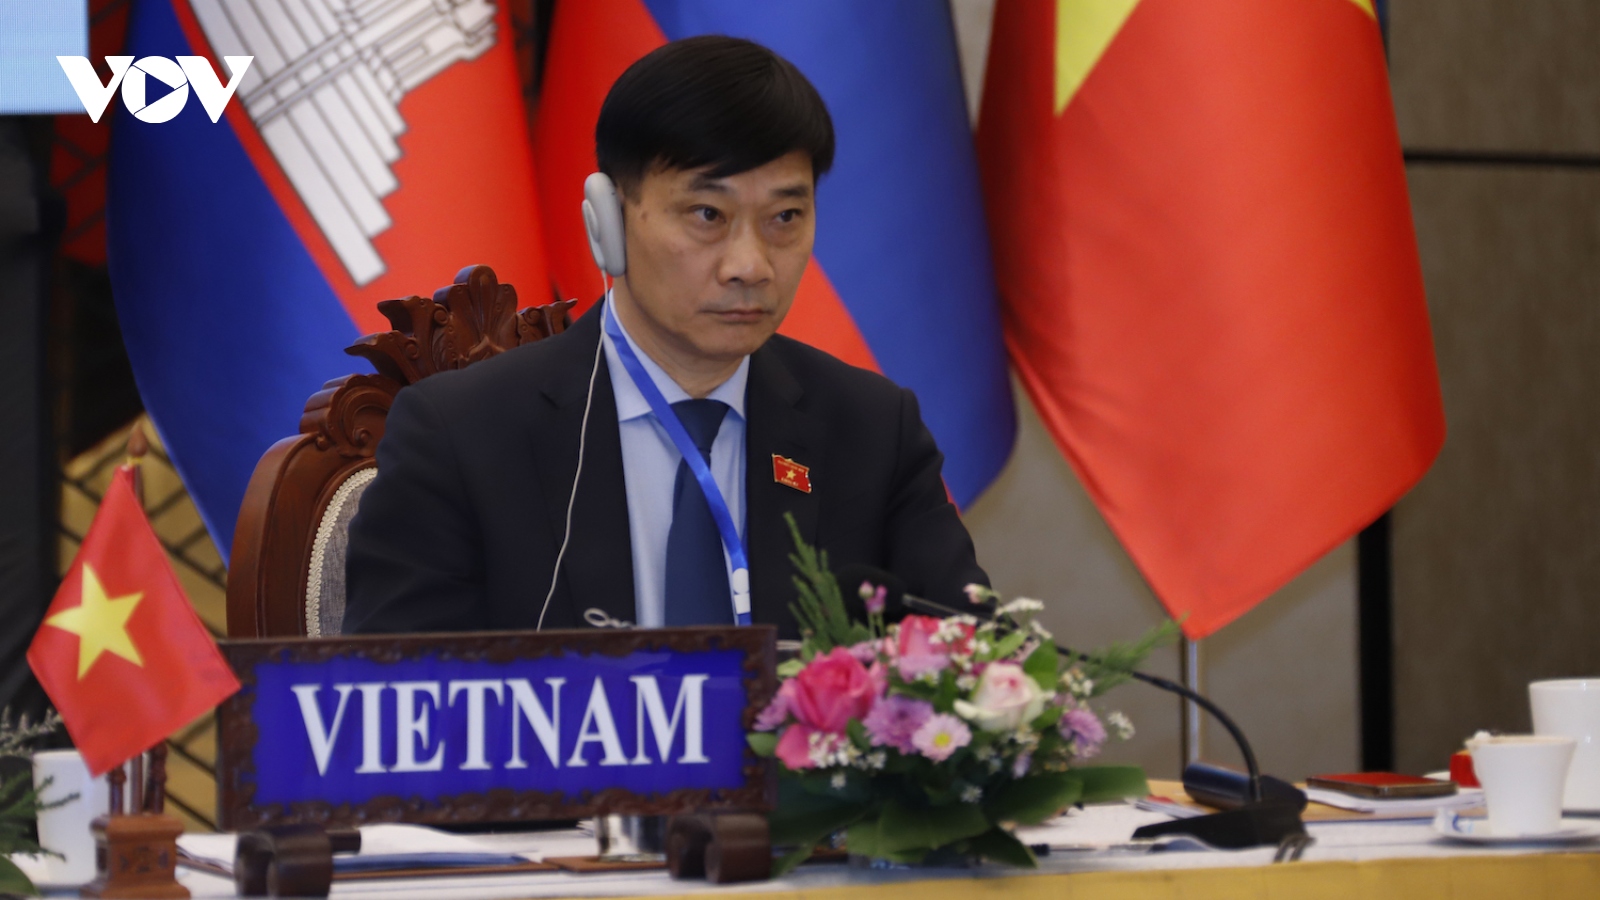 Hợp tác nghị viện thúc đẩy kết nối 3 nền kinh tế Campuchia-Lào-Việt Nam